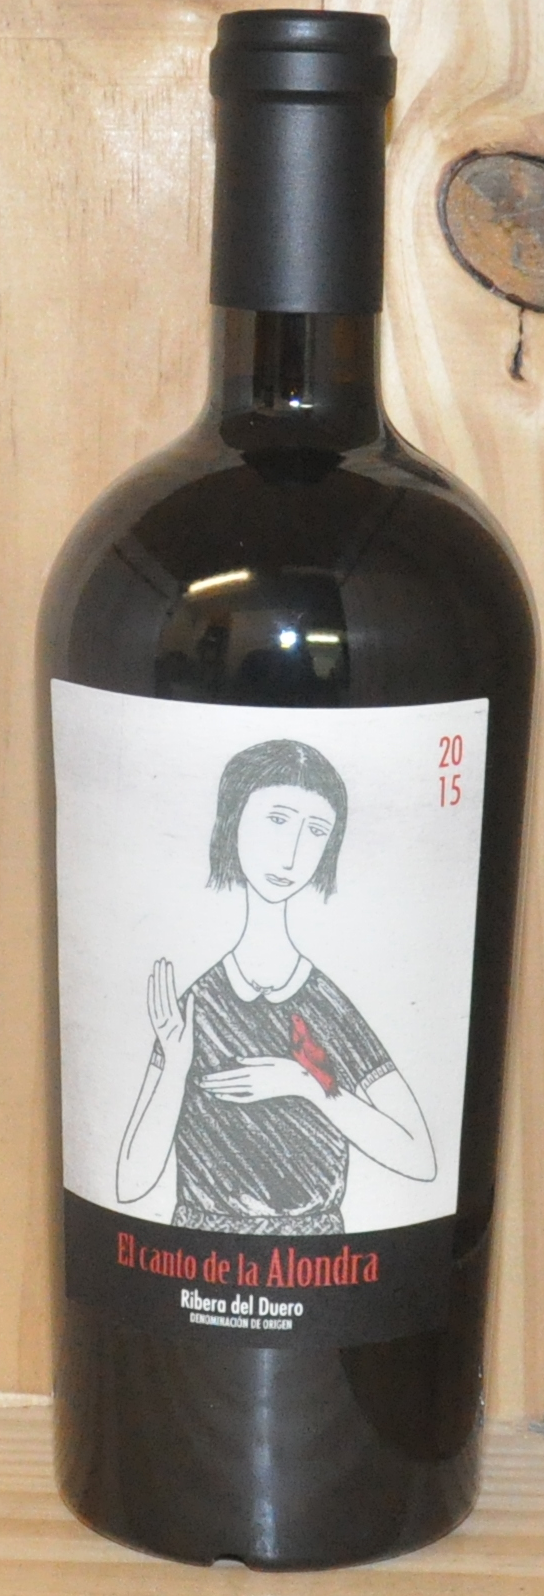 La Maldita - Garnacha - Rioja - 2015 - Red Wines - Spanish Wines - Win